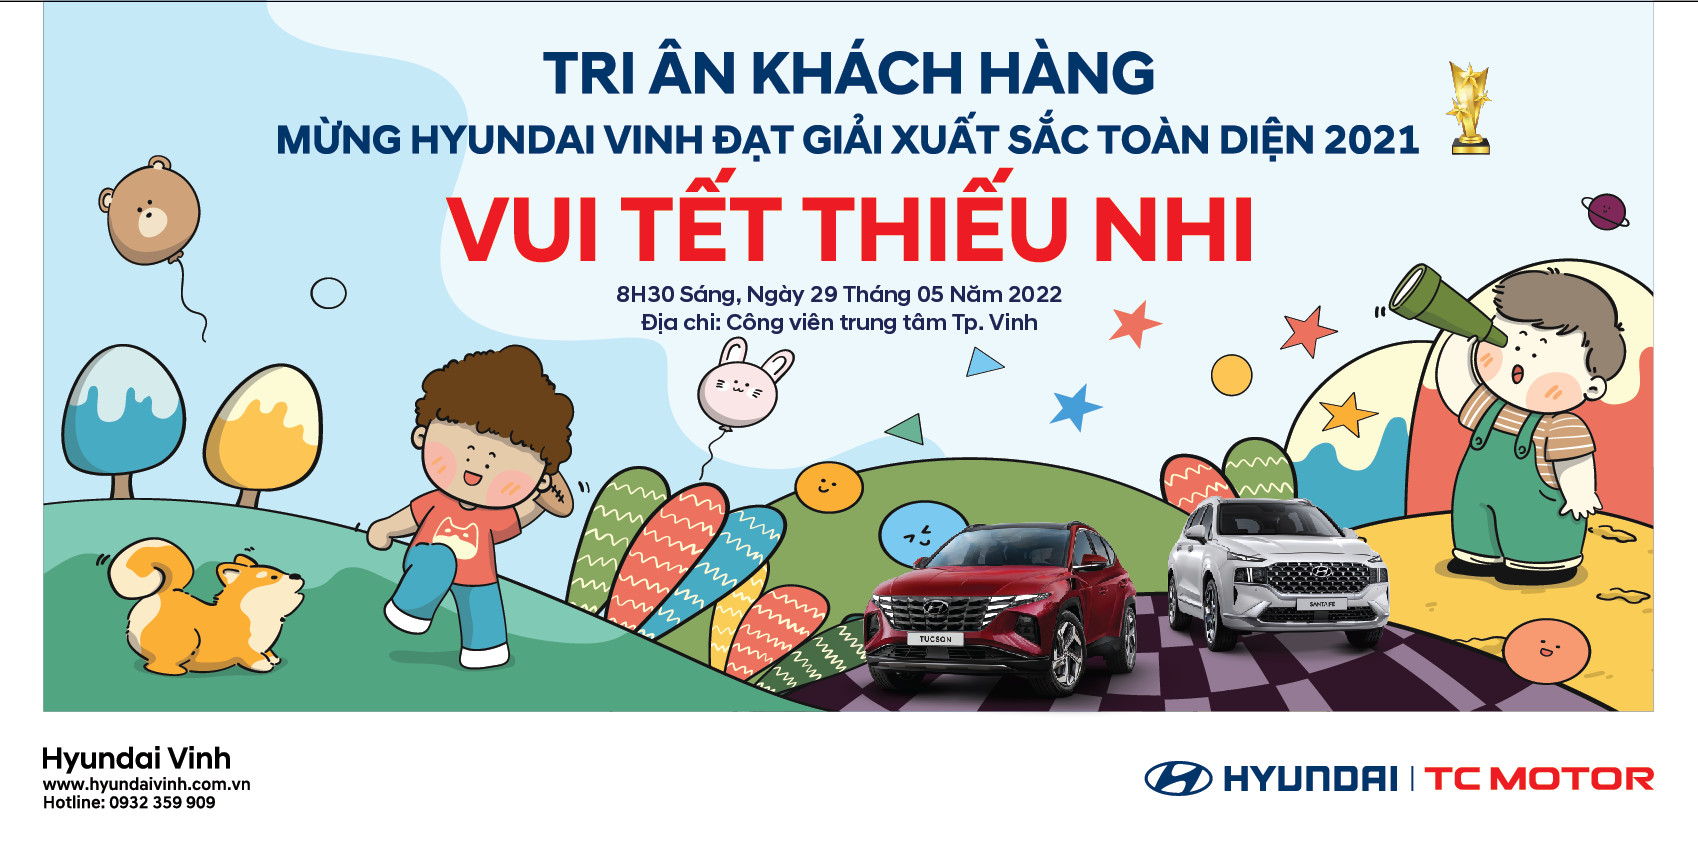 Hyundai Vinh tri ân khách hàng vui tết thiếu nhi ngày 1.6